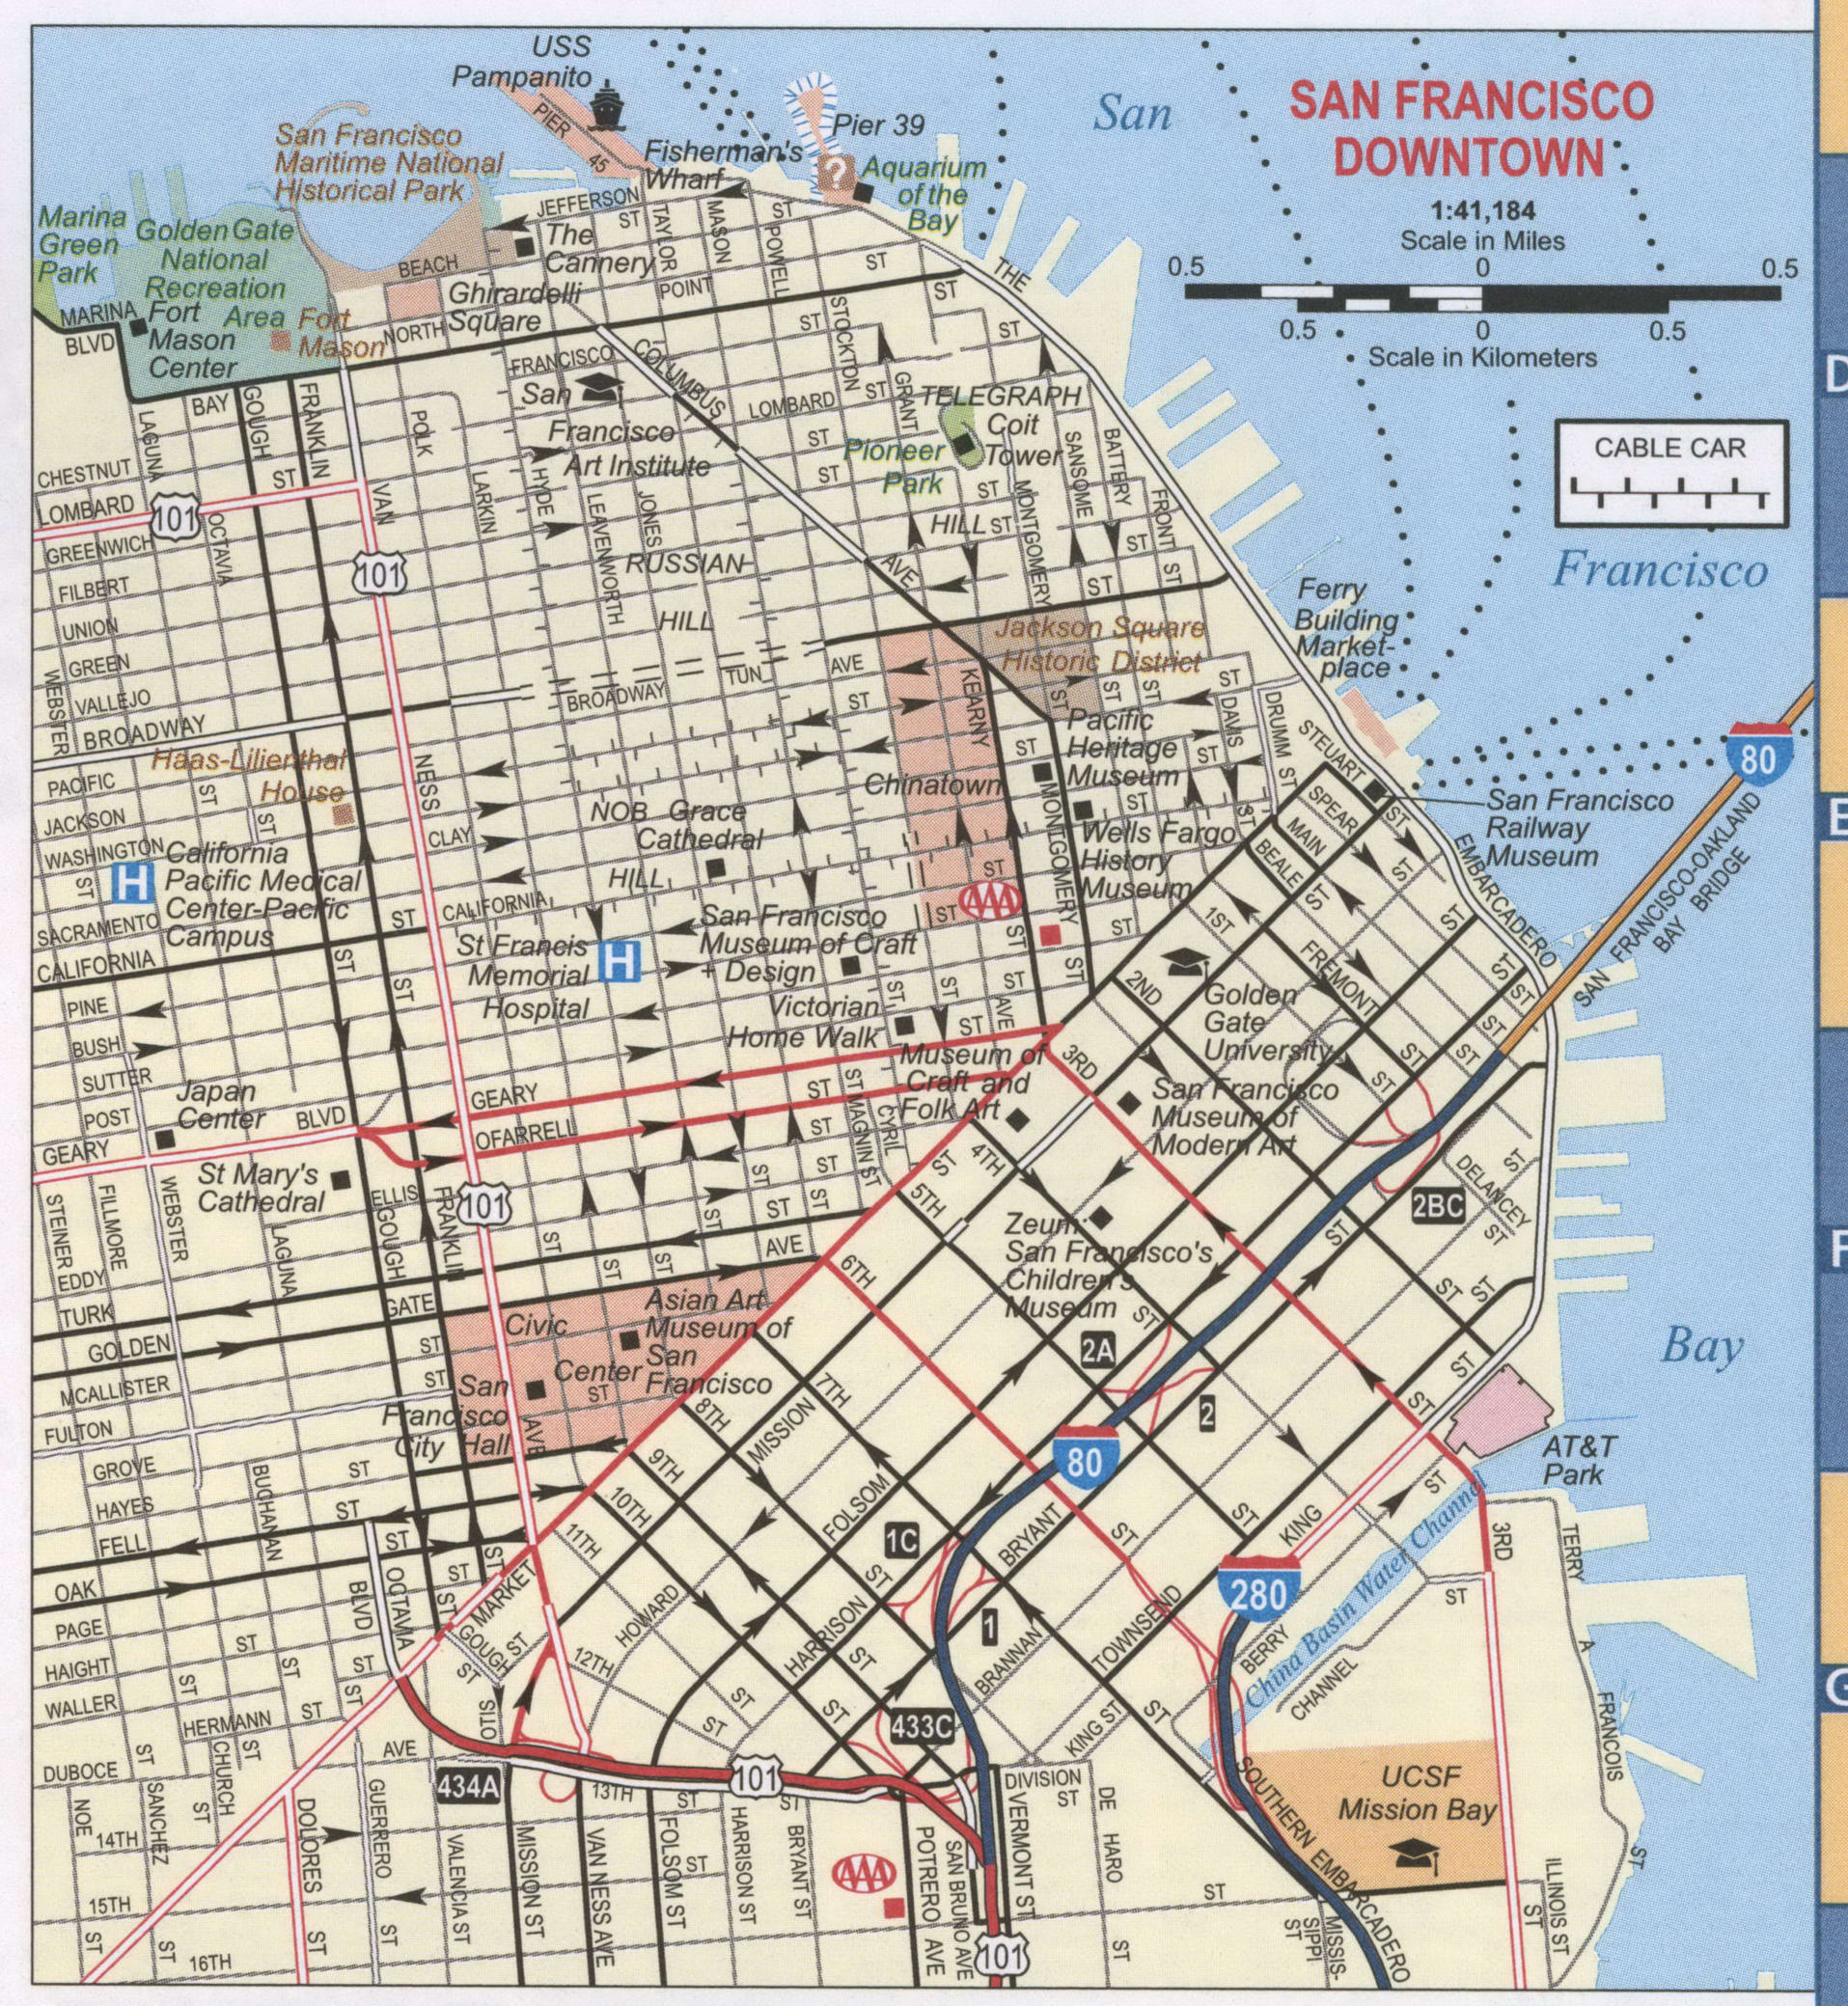 San Francisco downtown map